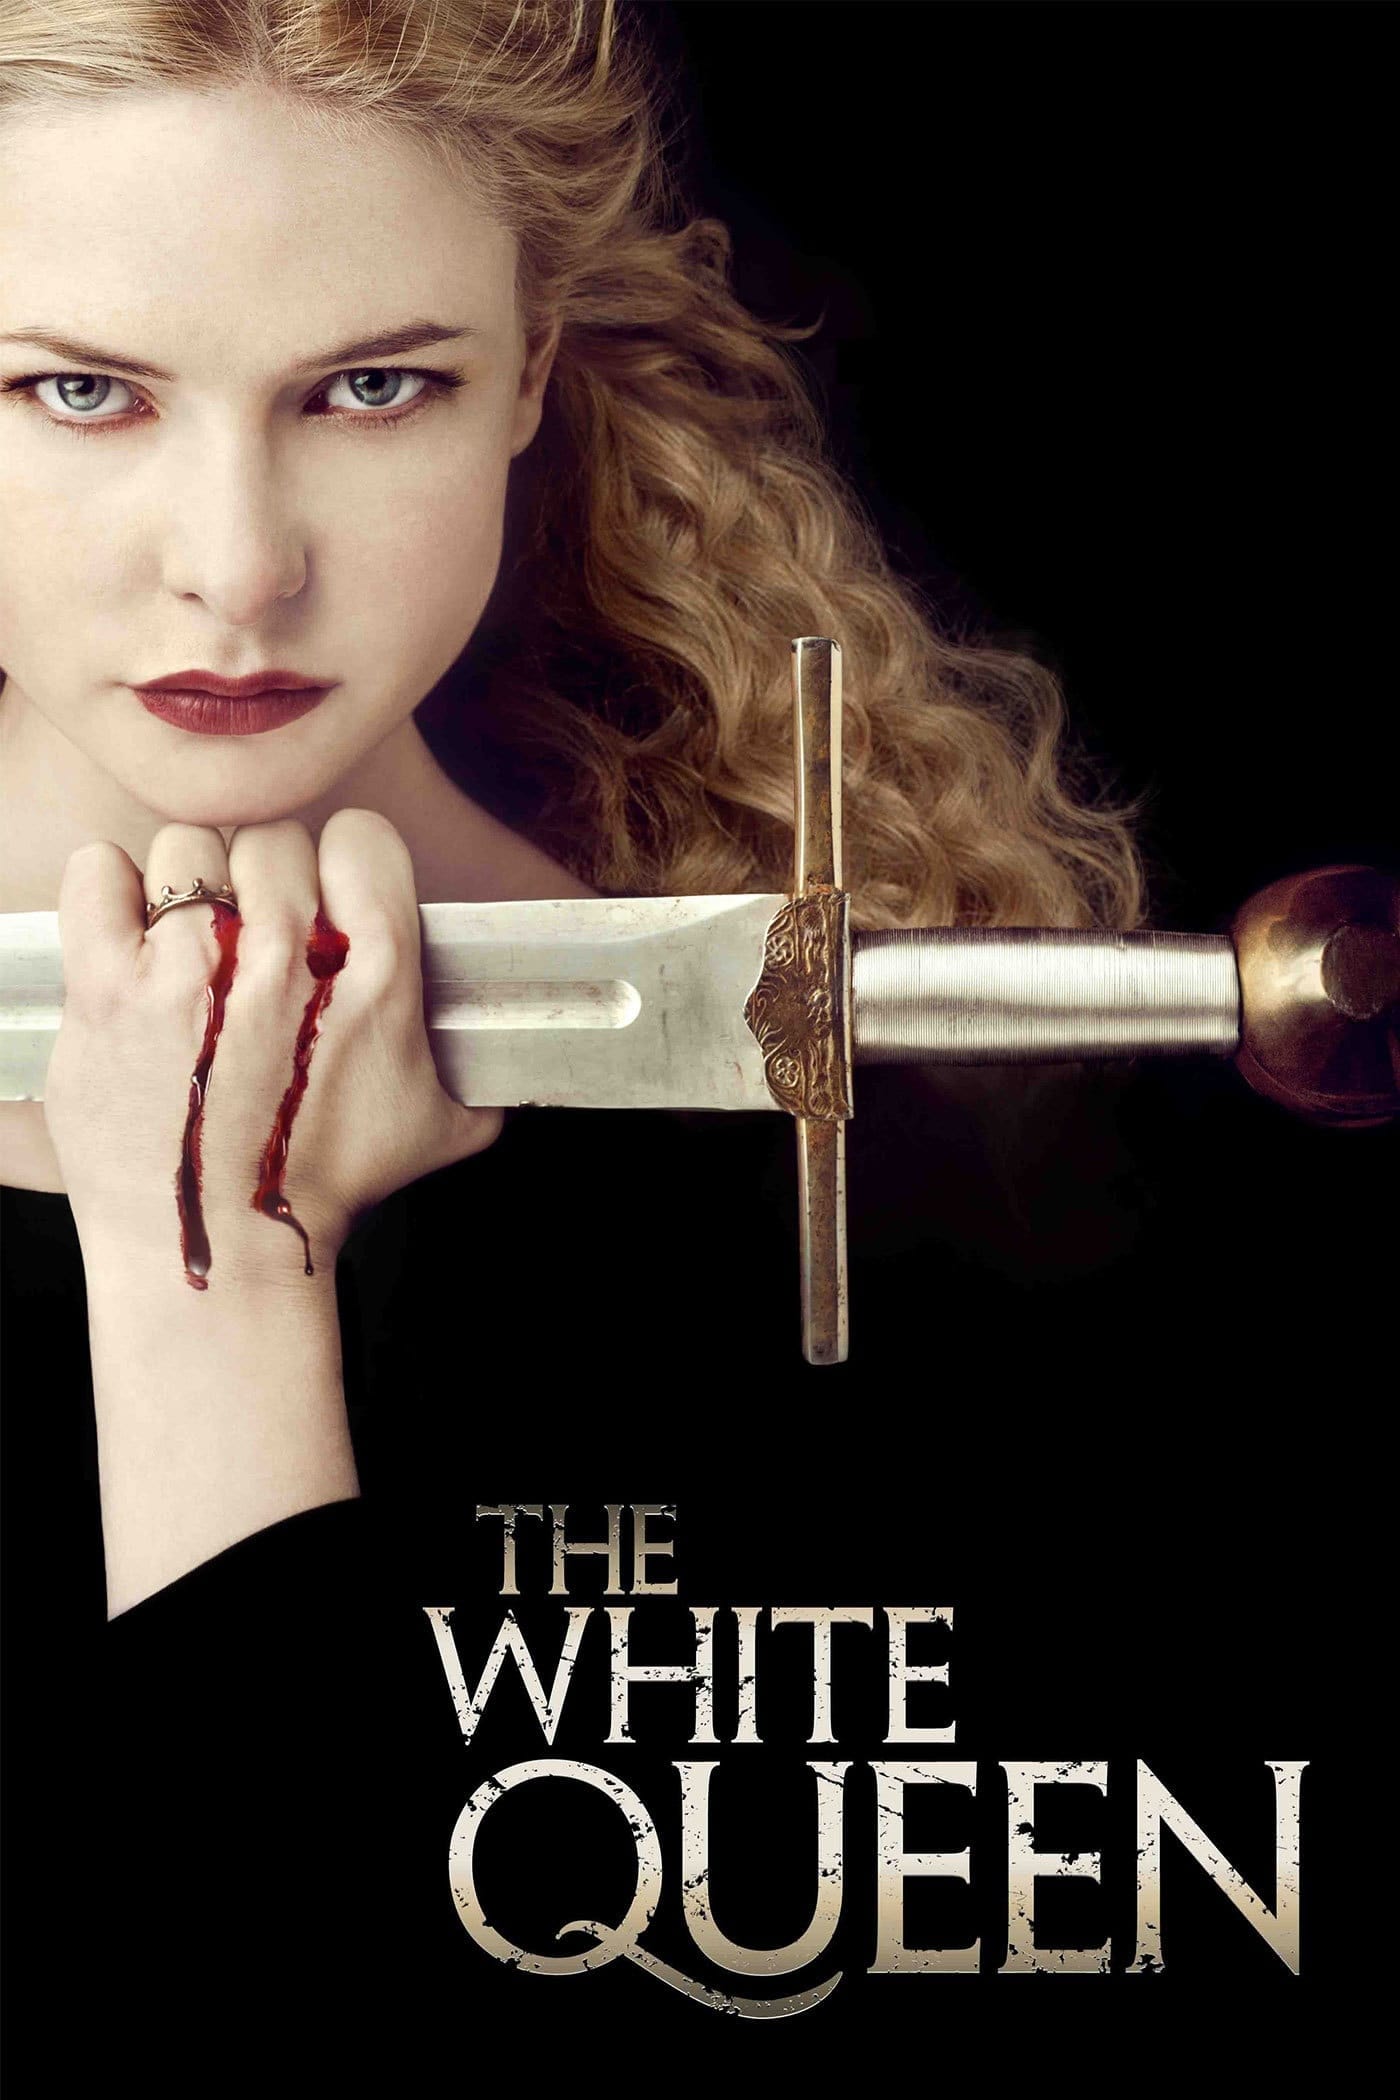 La reina blanca (2013)